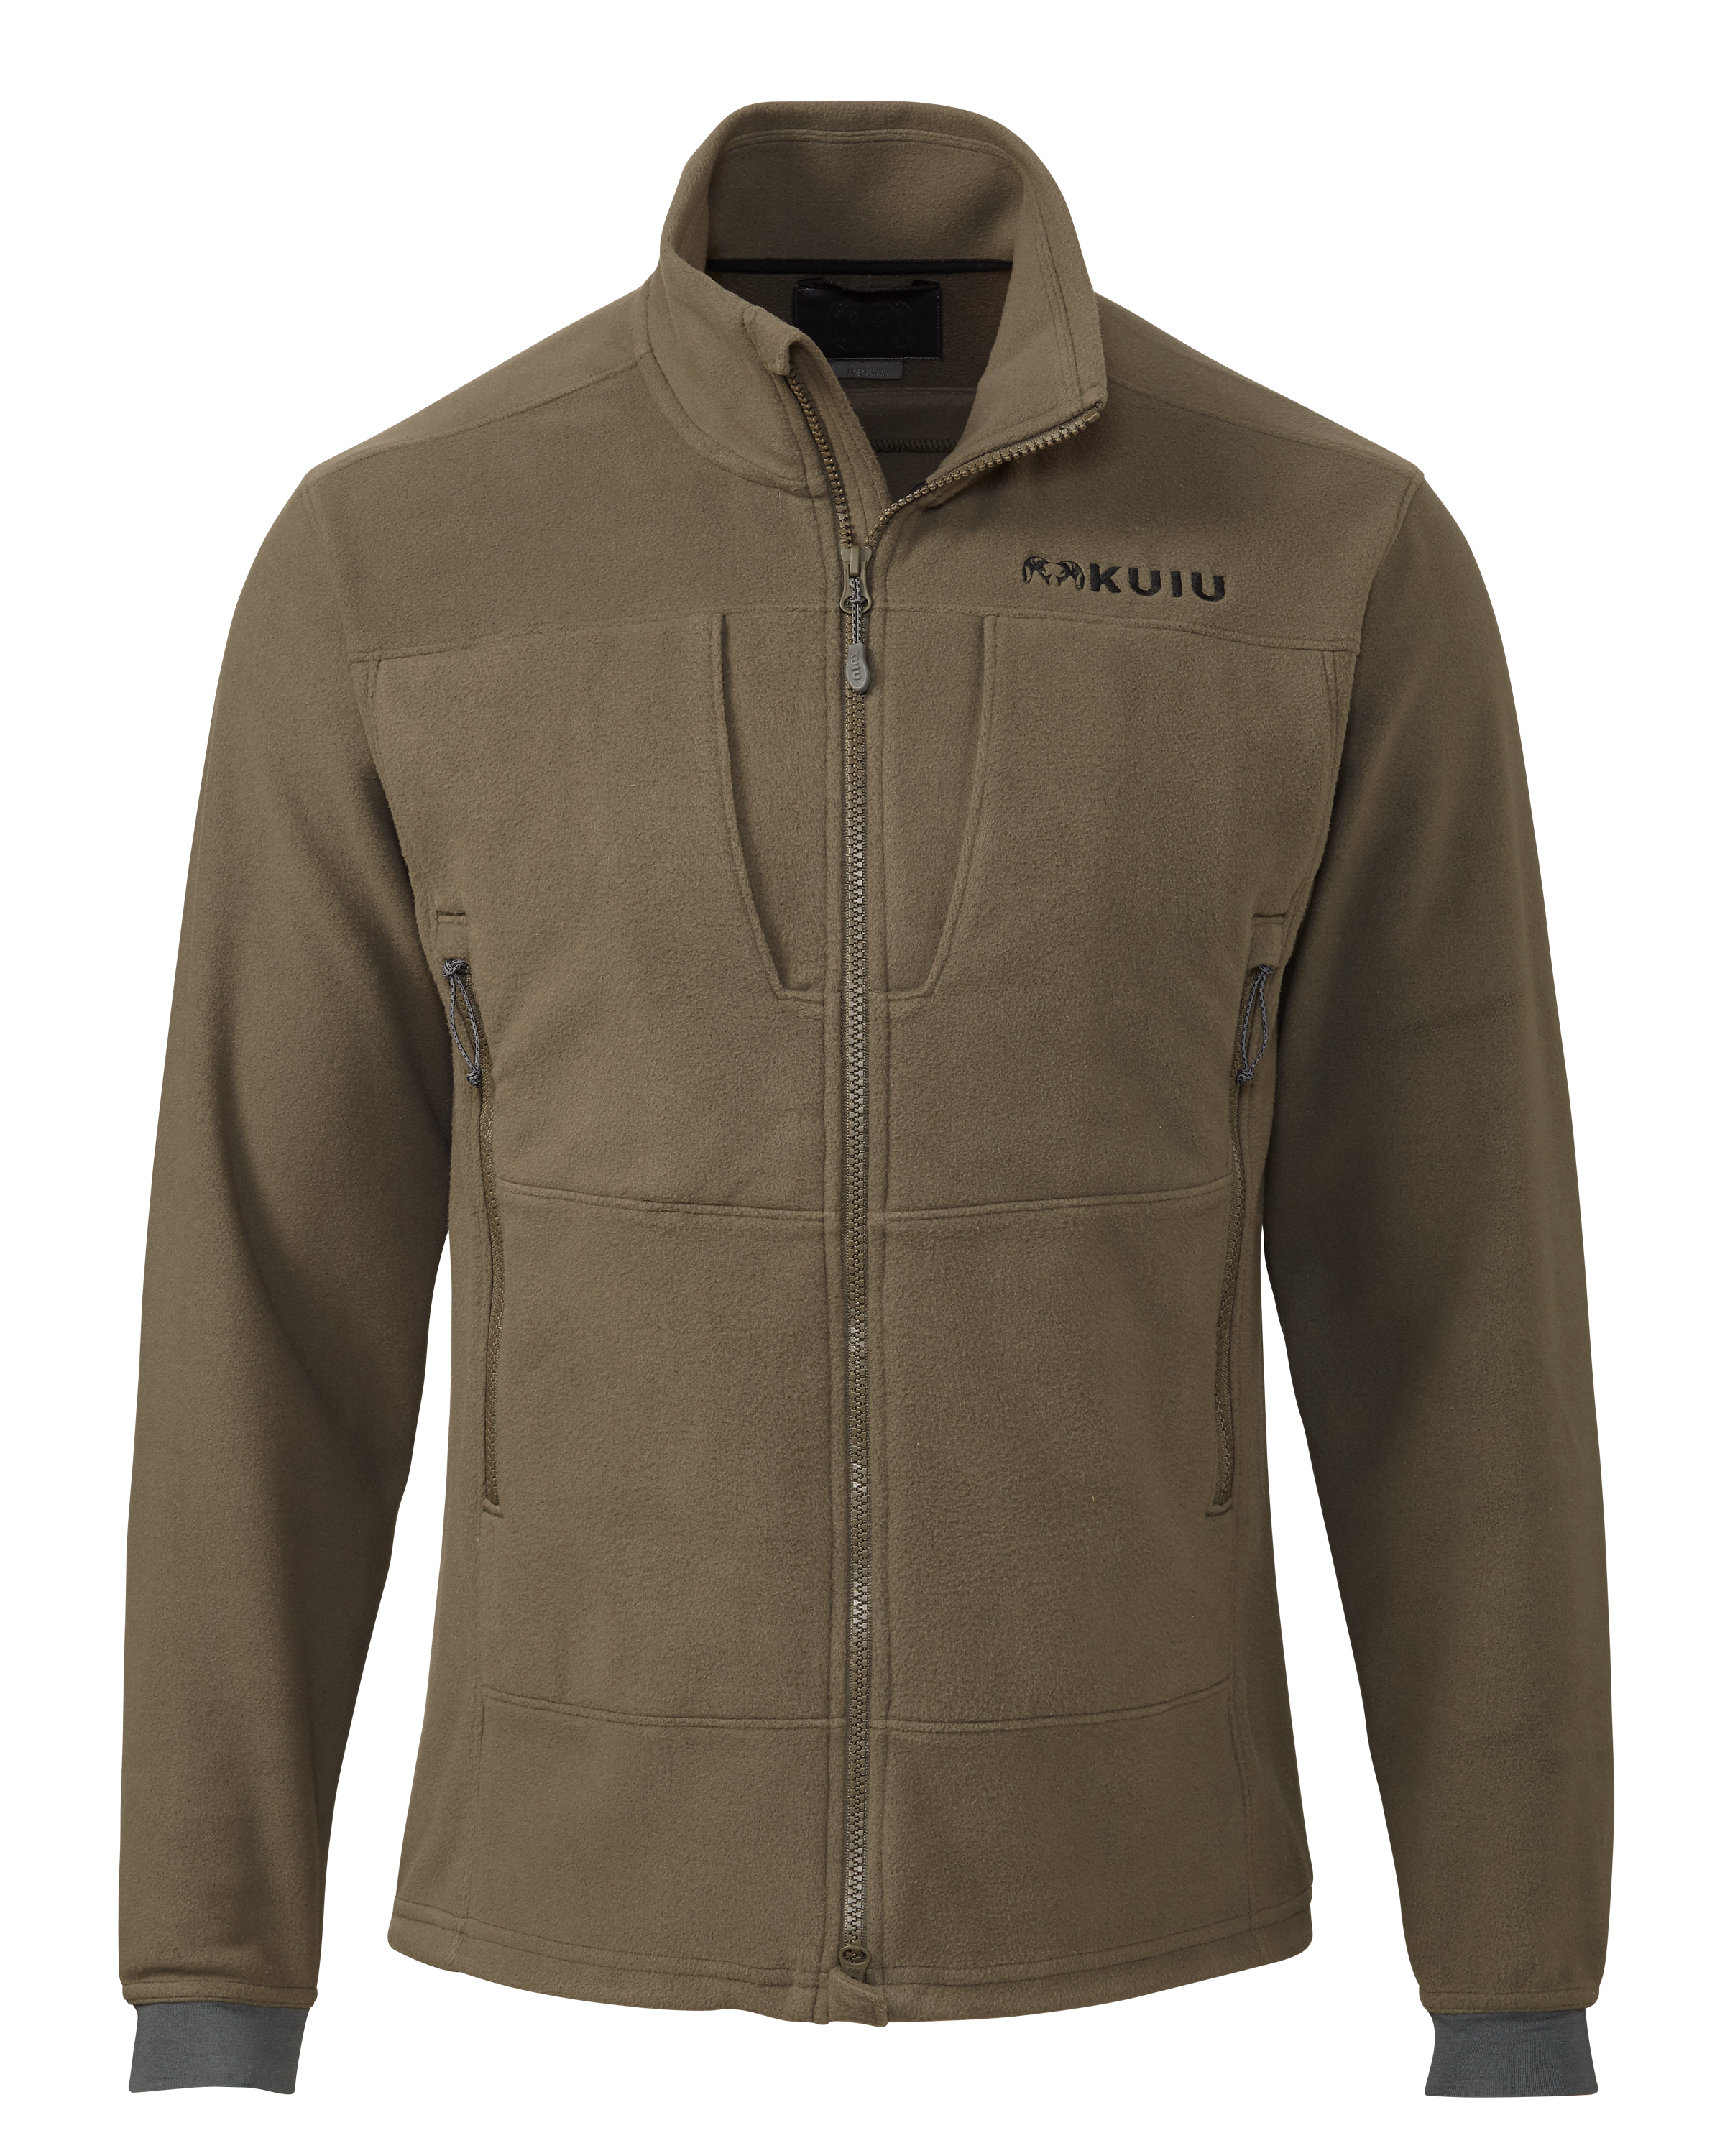 KUIU Wind Pro Fleece Full Zip Hunting Jacket in Ash | Size 2XL